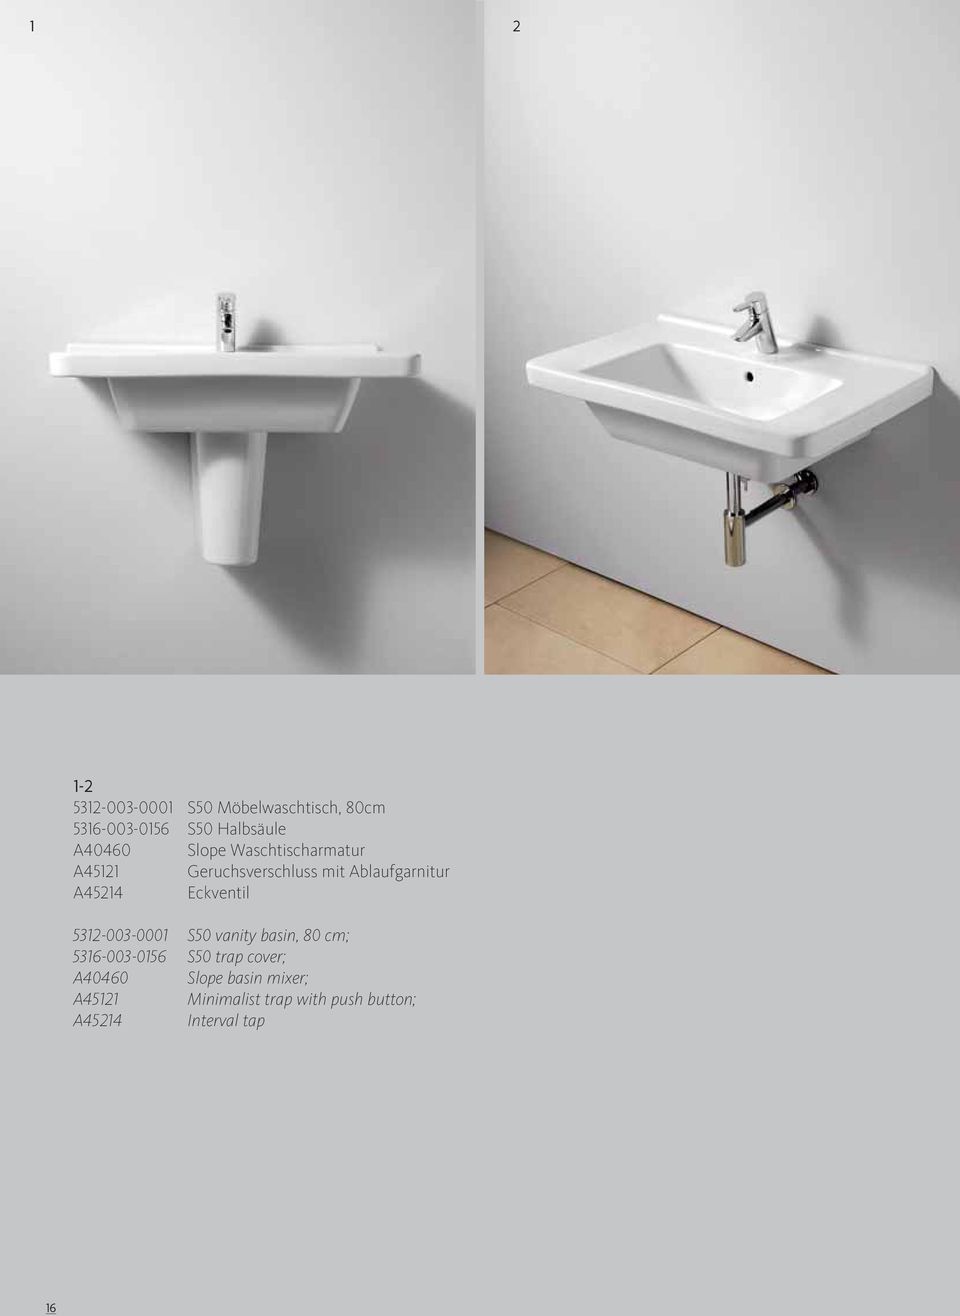 Eckventil 5312-003-0001 S50 vanity basin, 80 cm; 5316-003-0156 S50 trap cover;